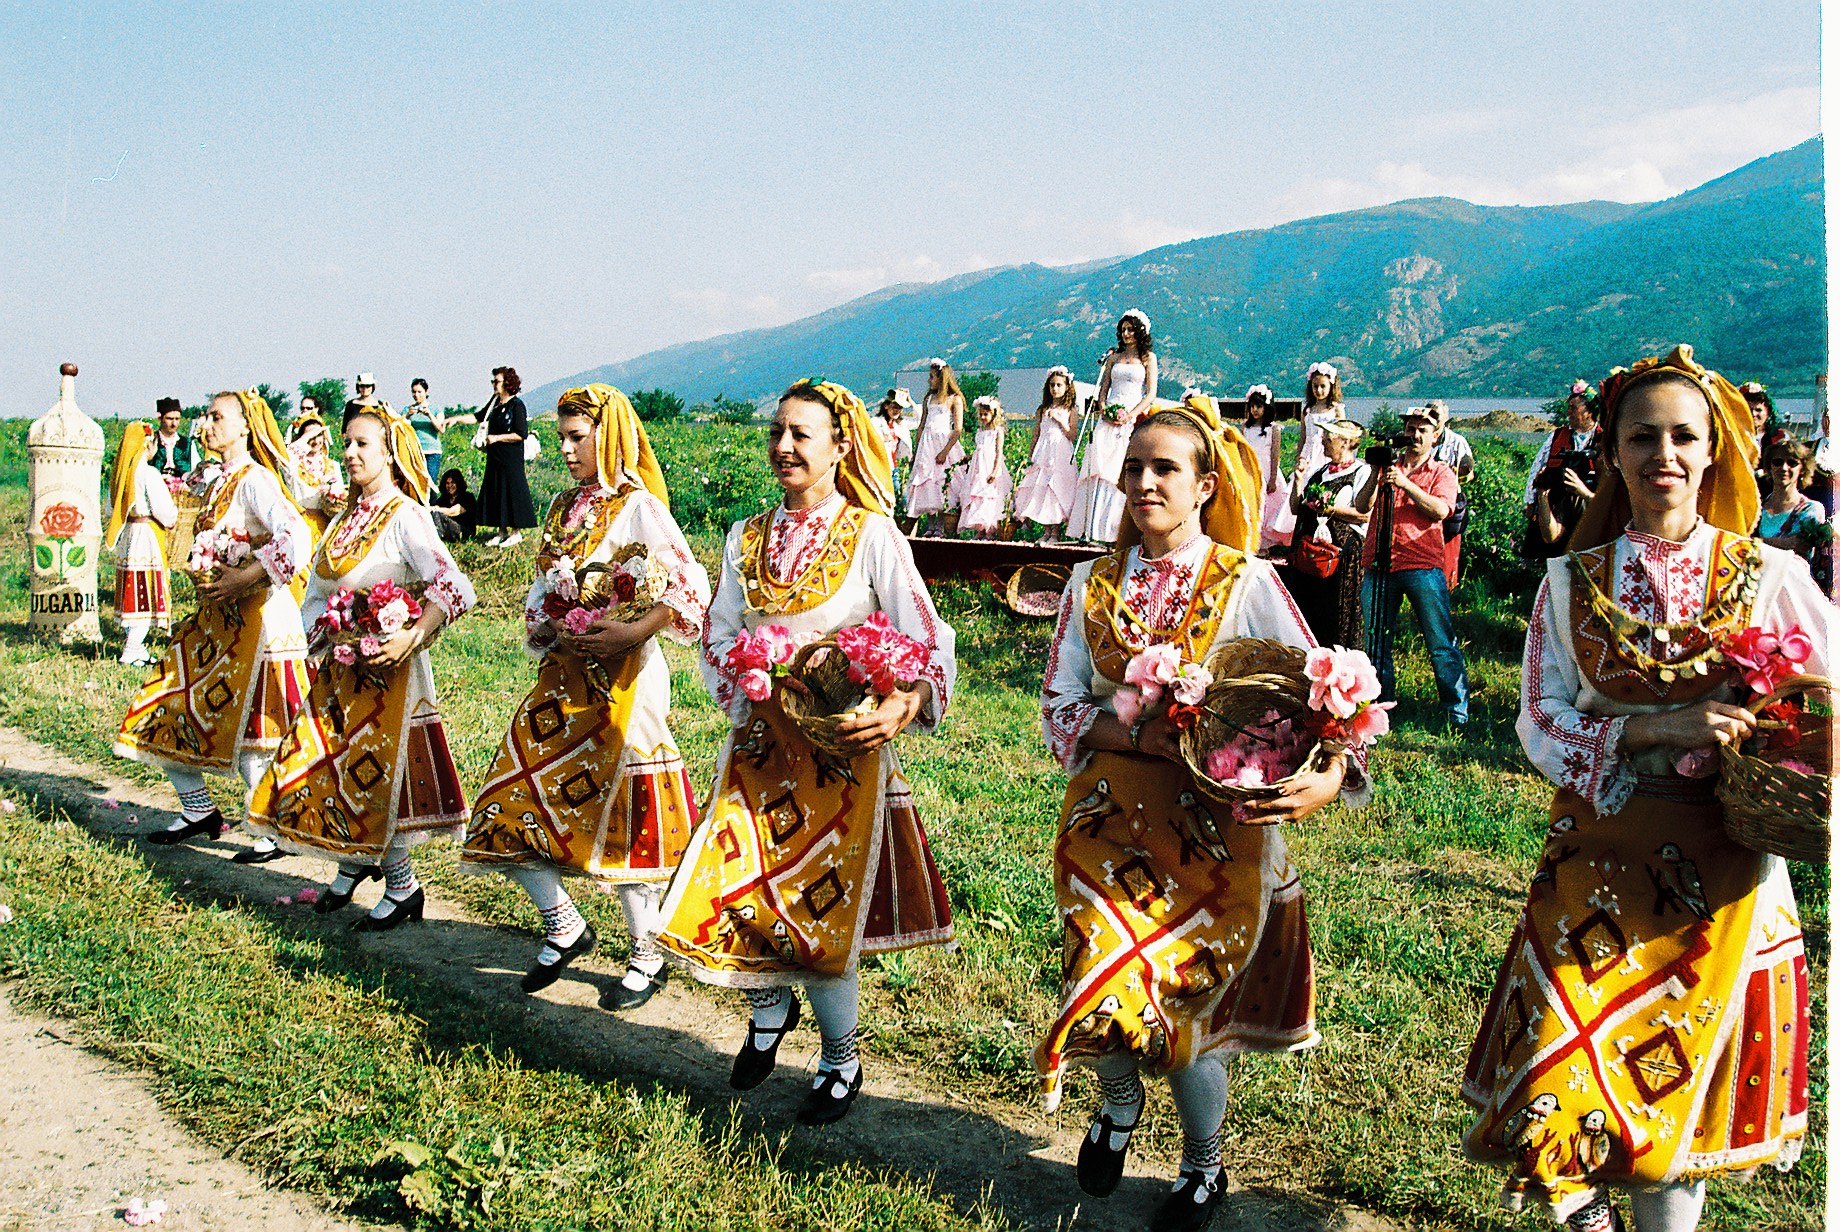 Rose festival in Kazanlak, Bulgaria